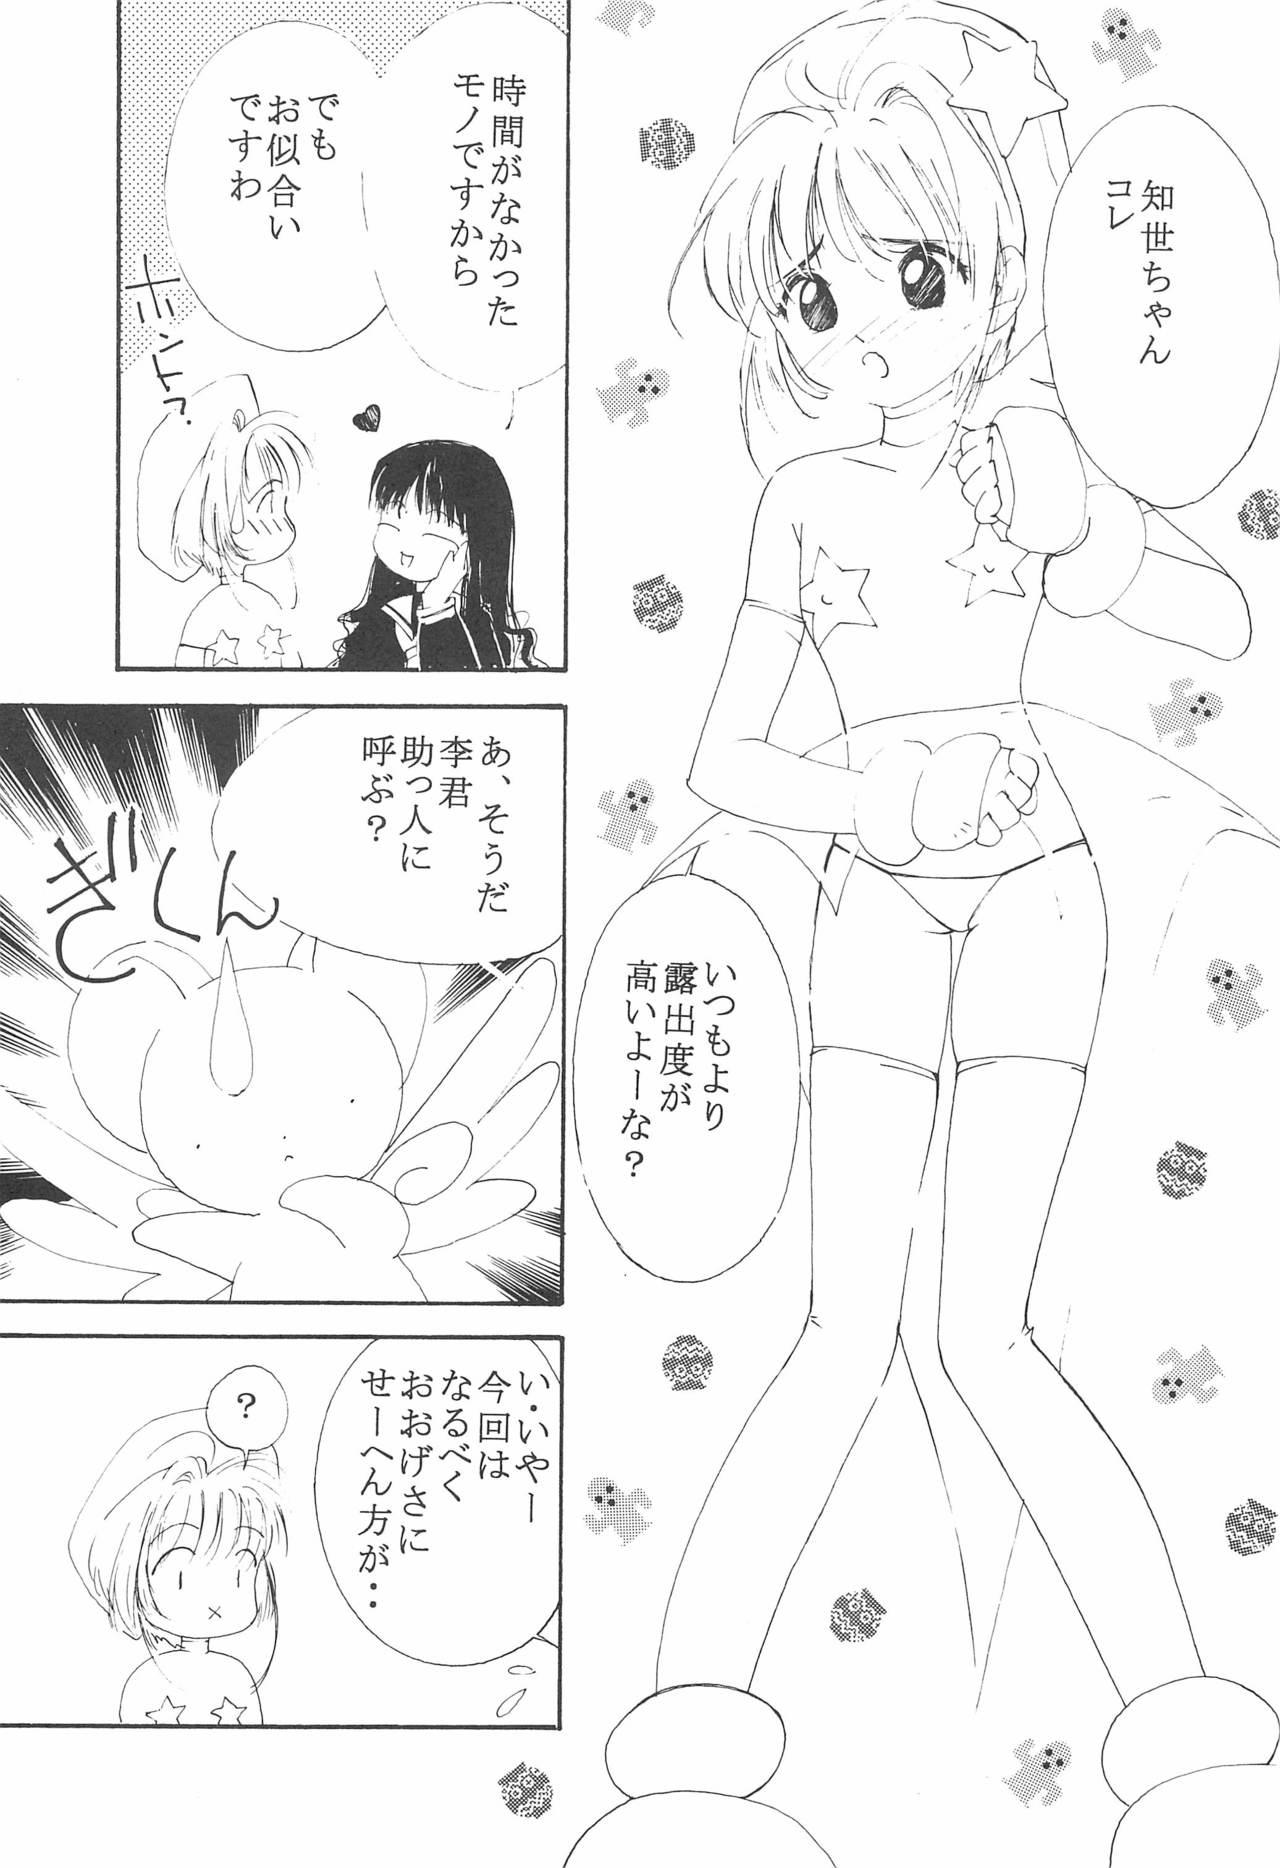 Storyline MoMo no Yu 8 - Cardcaptor sakura Oral Sex Porn - Page 7